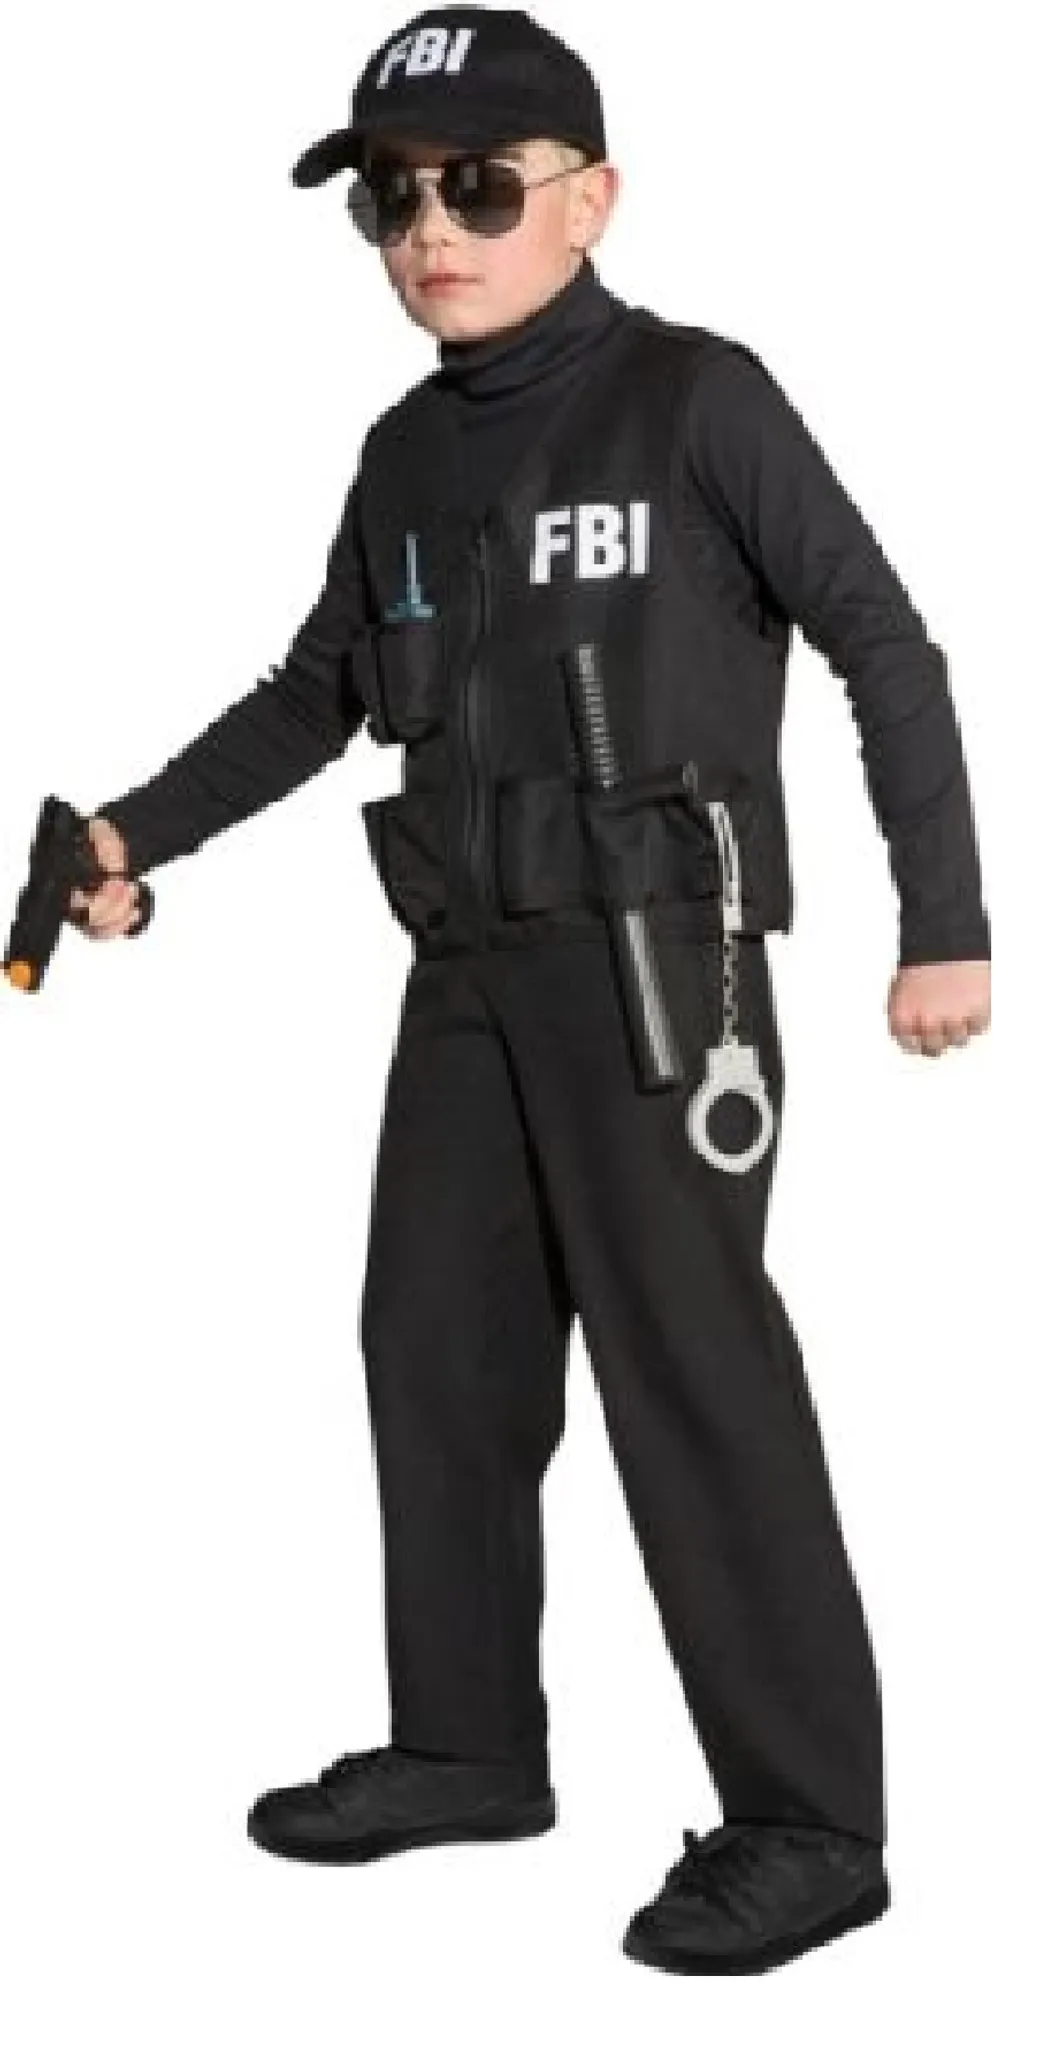 O5323-140-152 schwarz FBI Weste Polizeiweste